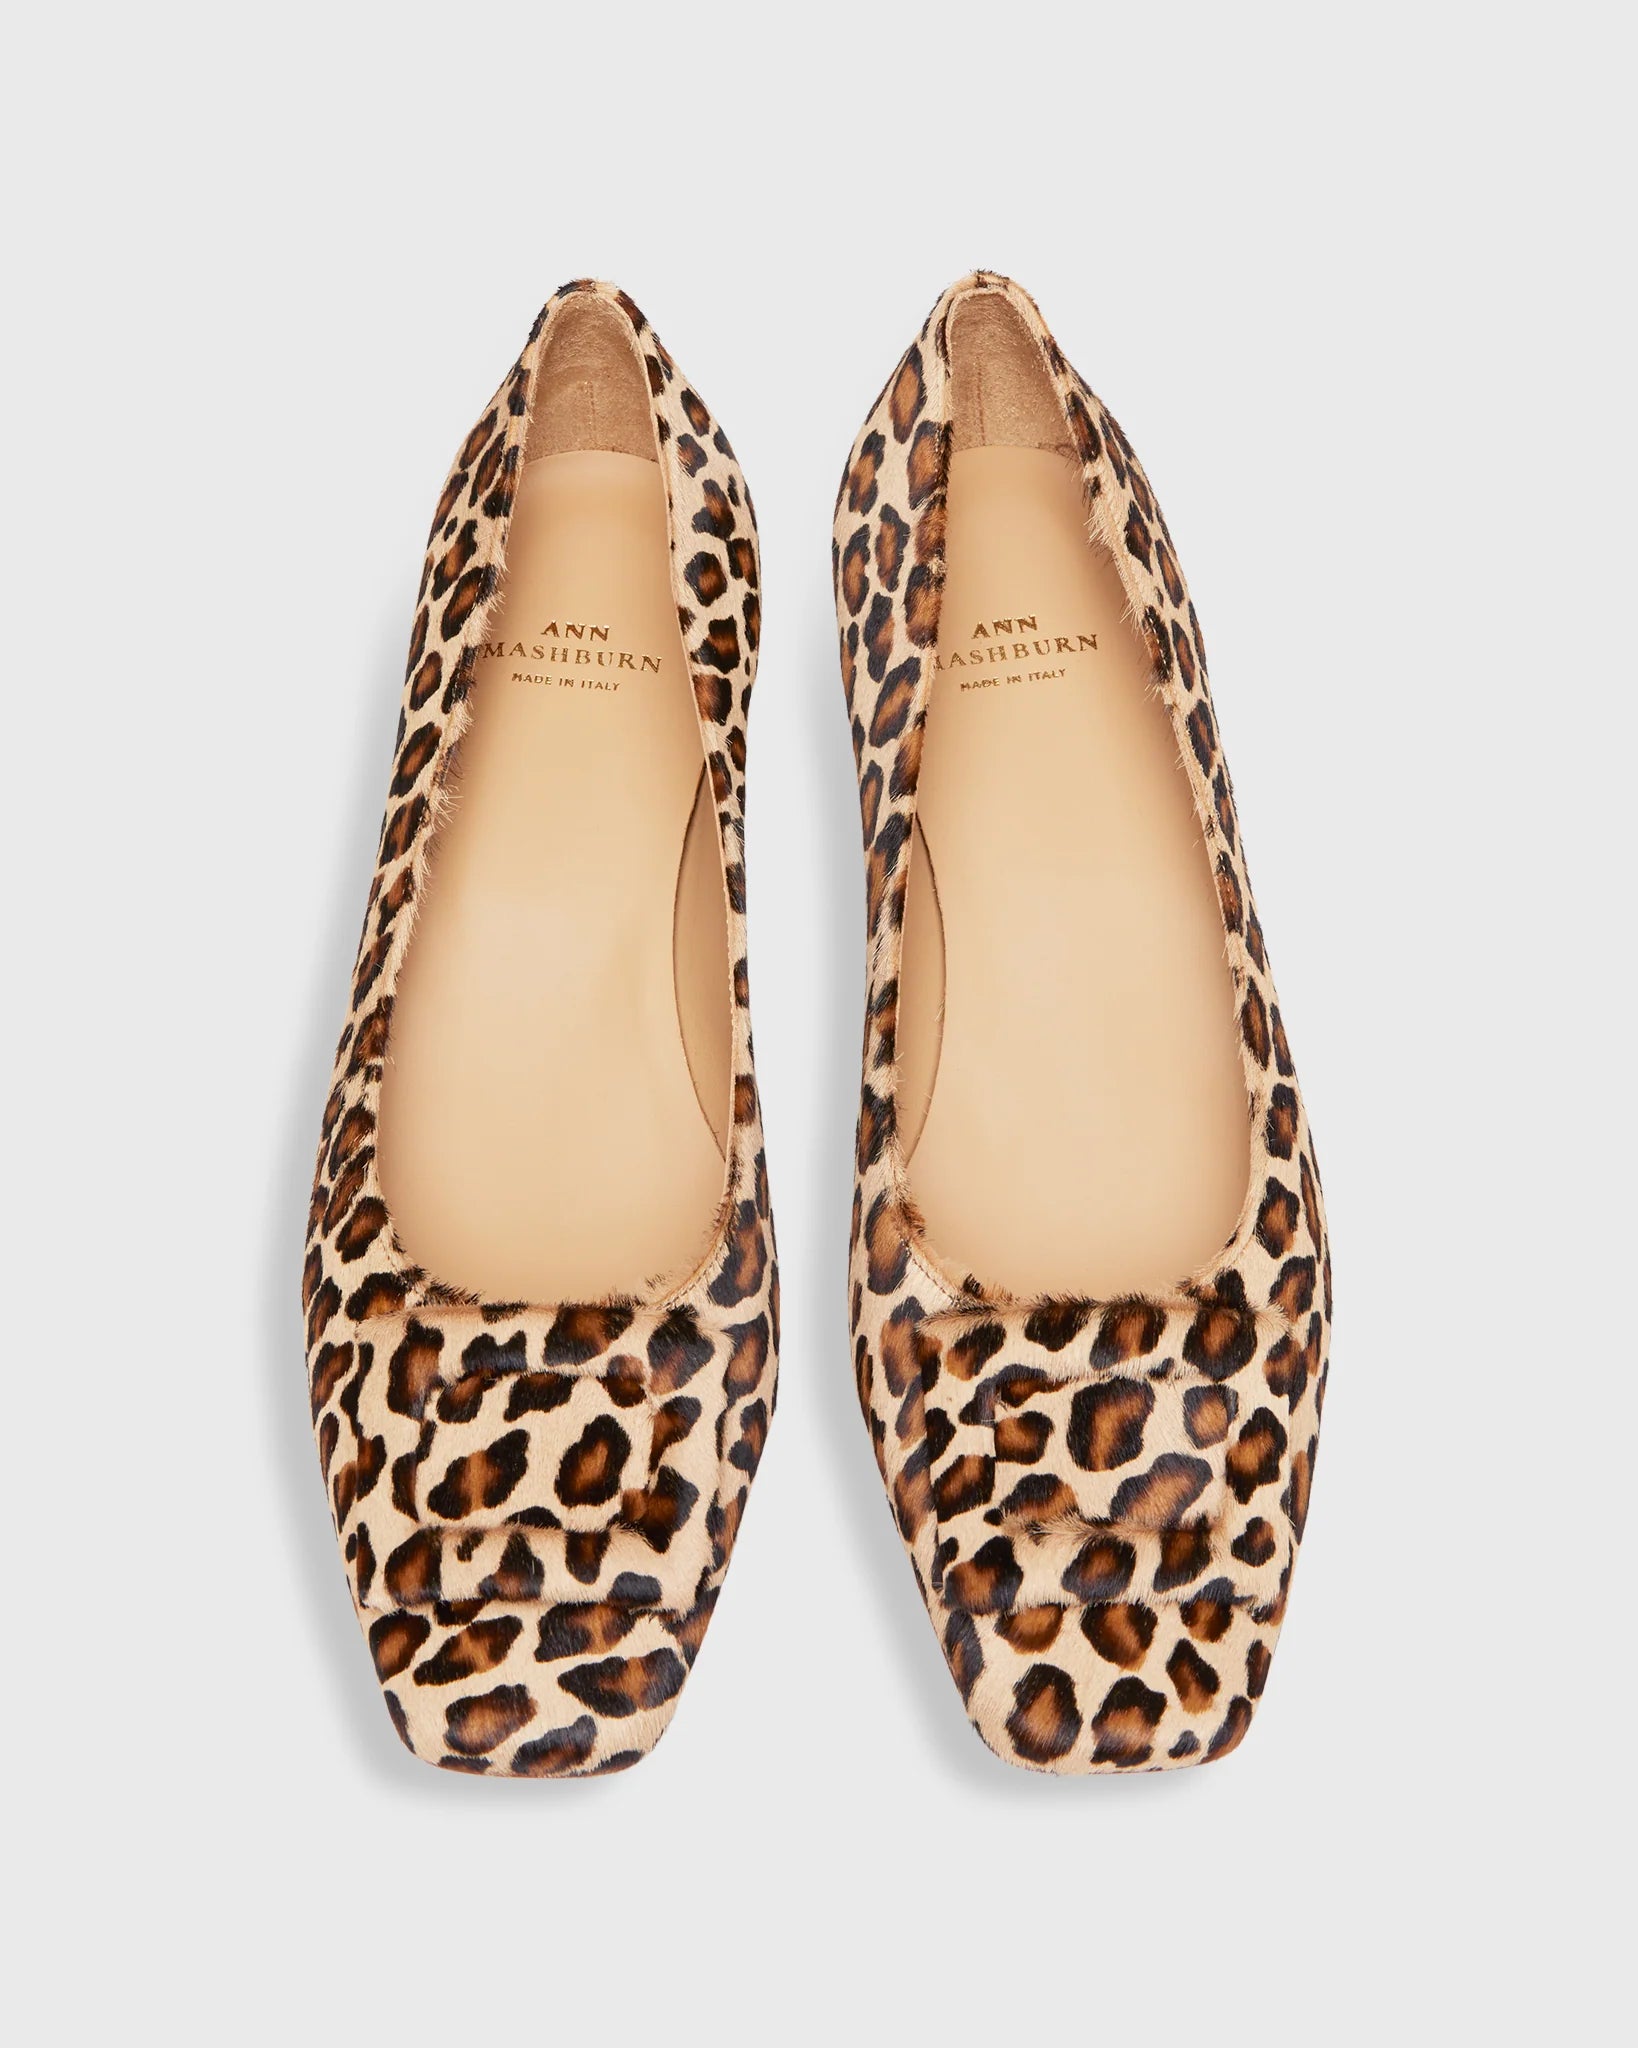 Ann Mashburn Buckle Shoe in Leopard Calf Hair